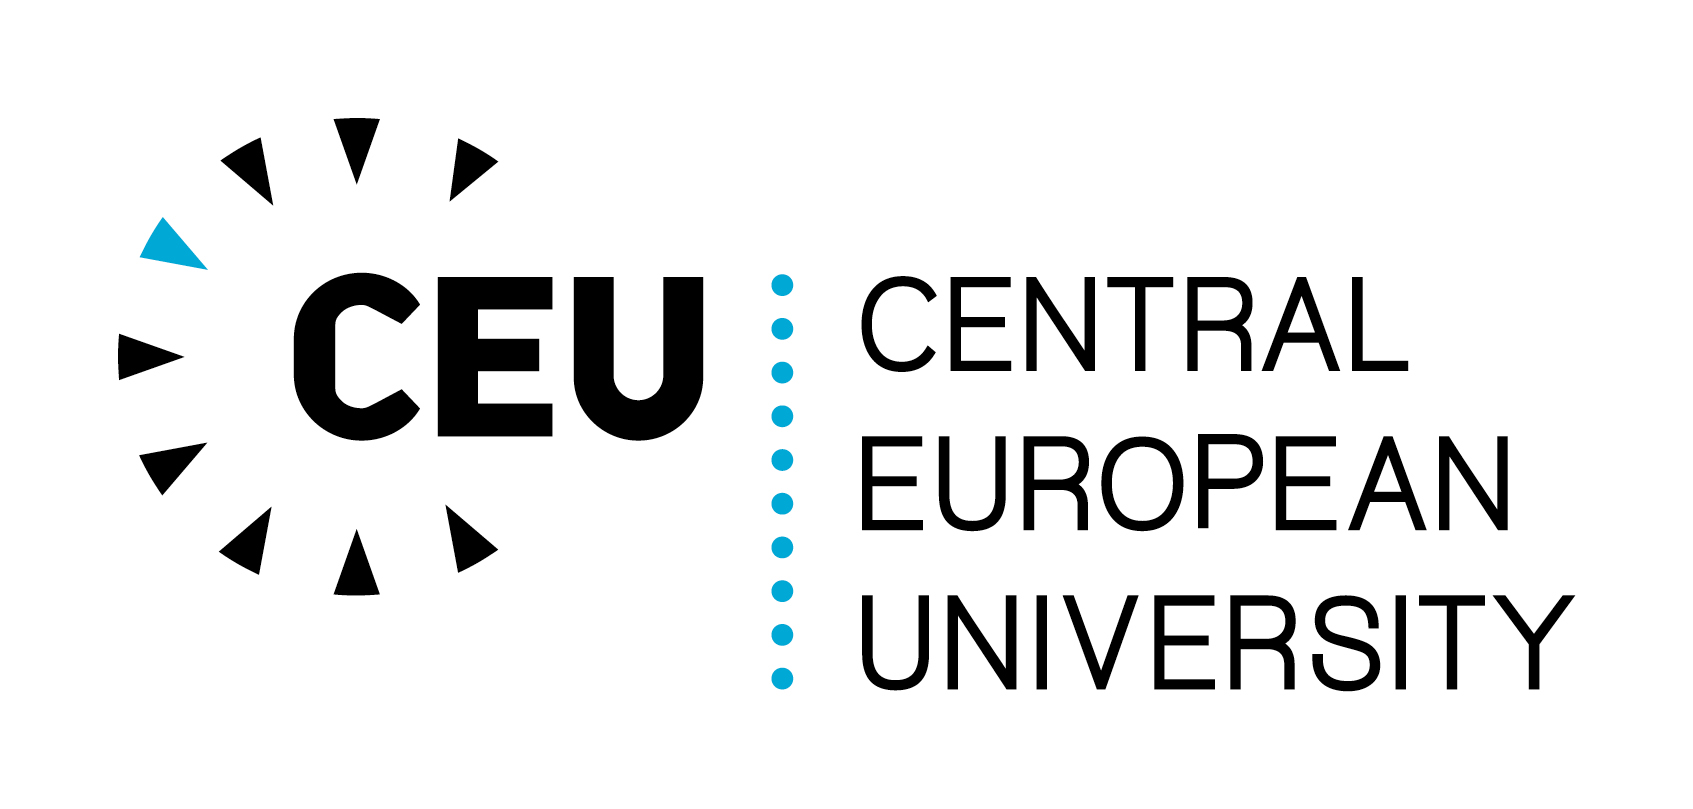 CEU - Central European University